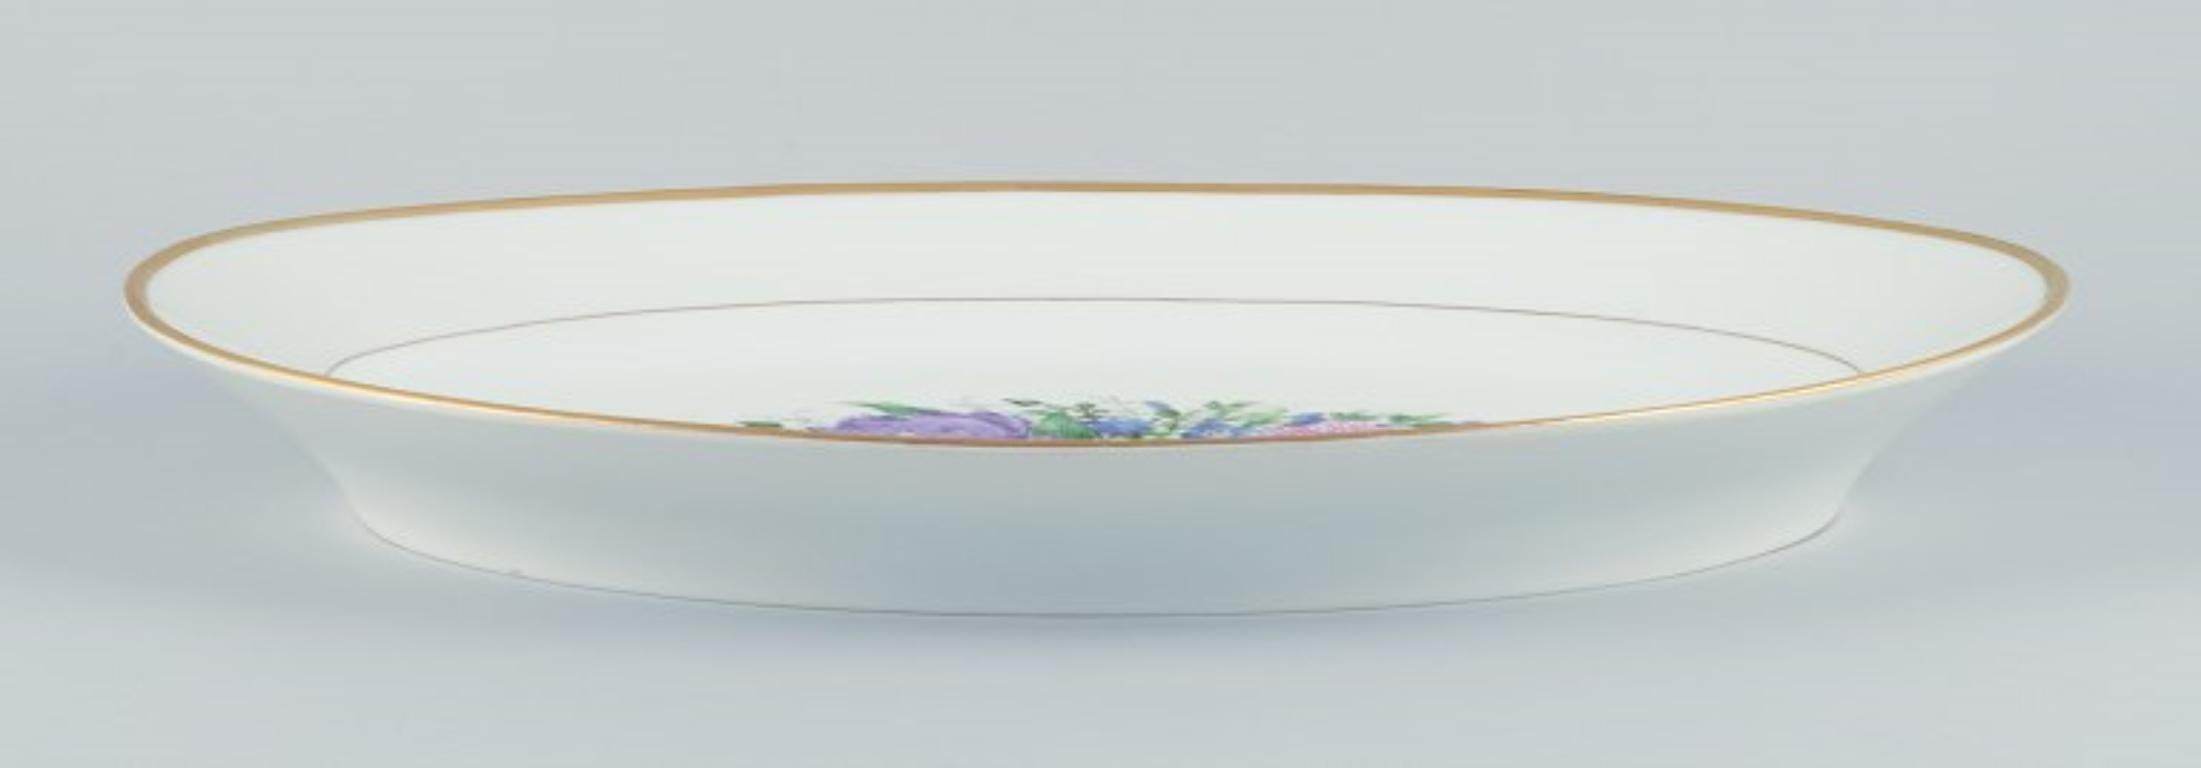 Bing & Grøndahl, große ovale Servierplatte, handbemalt mit polychromen Blumenmotiven und Goldverzierung.
Aus den 1920er Jahren.
Markiert.
Erste Fabrikqualität.
Perfekter Zustand.
Abmessungen: Länge 46,5 cm x Tiefe 32,5 cm x Höhe 5,0 cm.